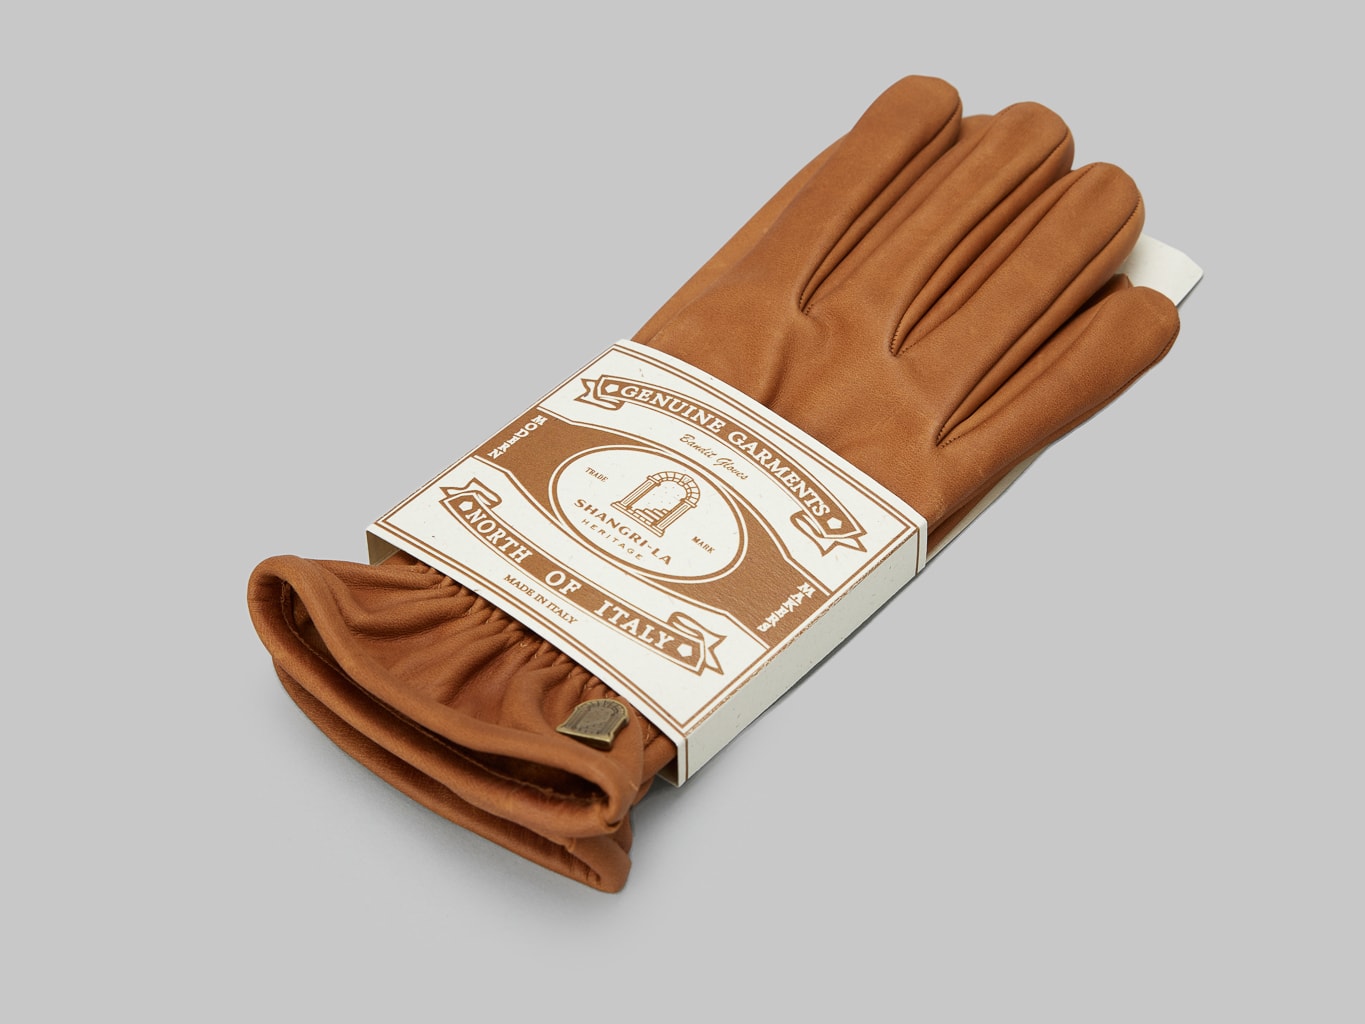 Shangri La Heritage Horsehide Gloves packaging